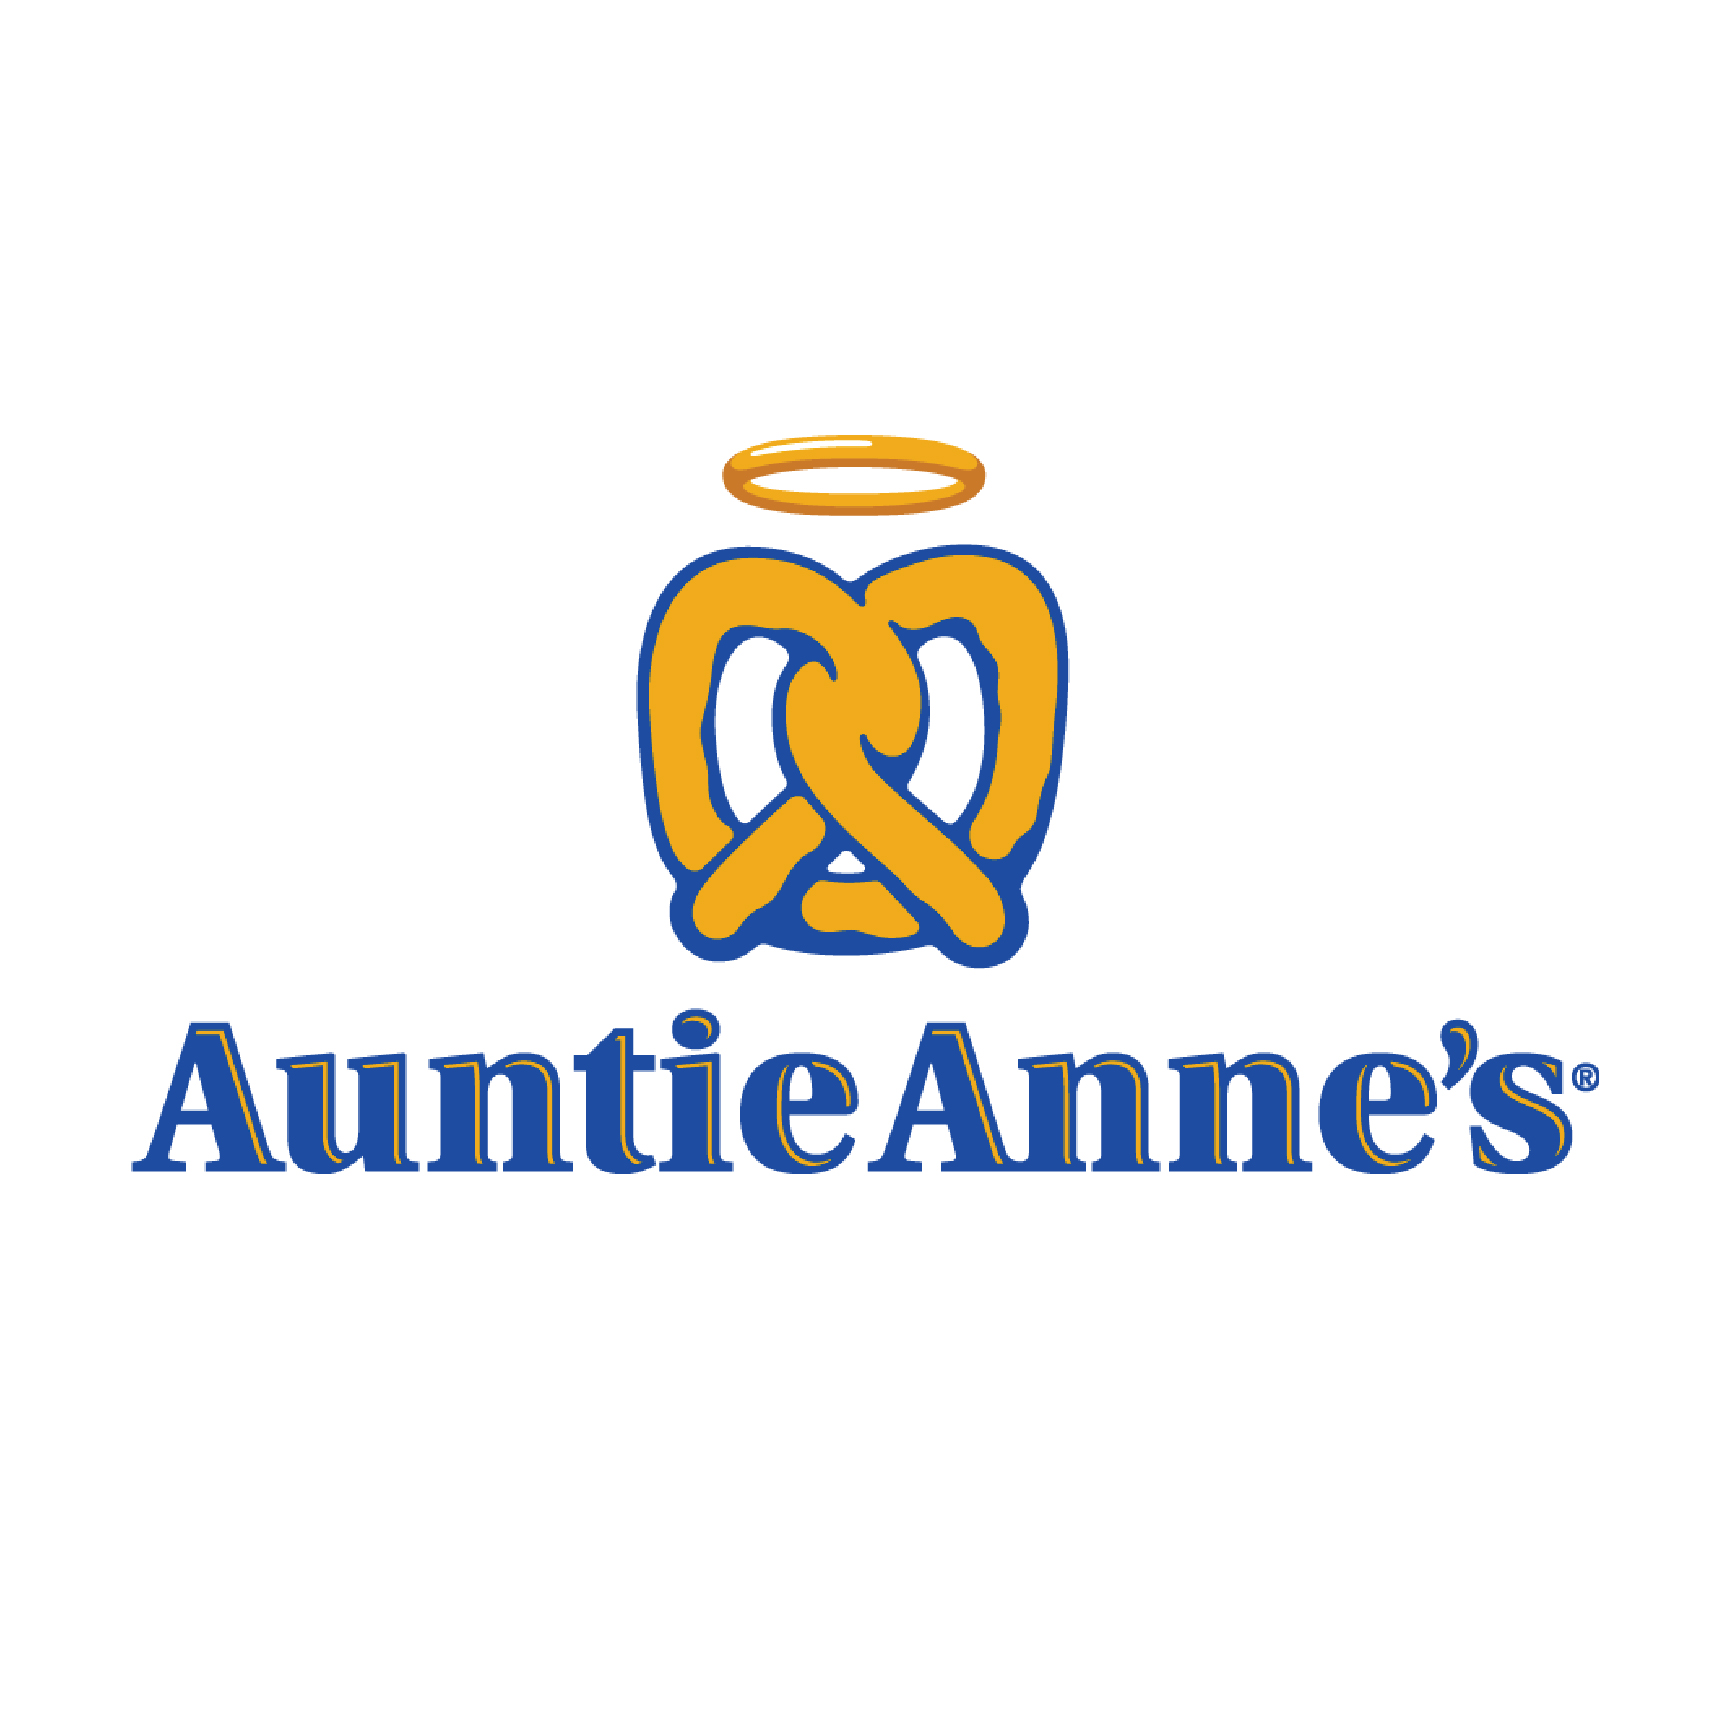 AUNTIE ANNE'S